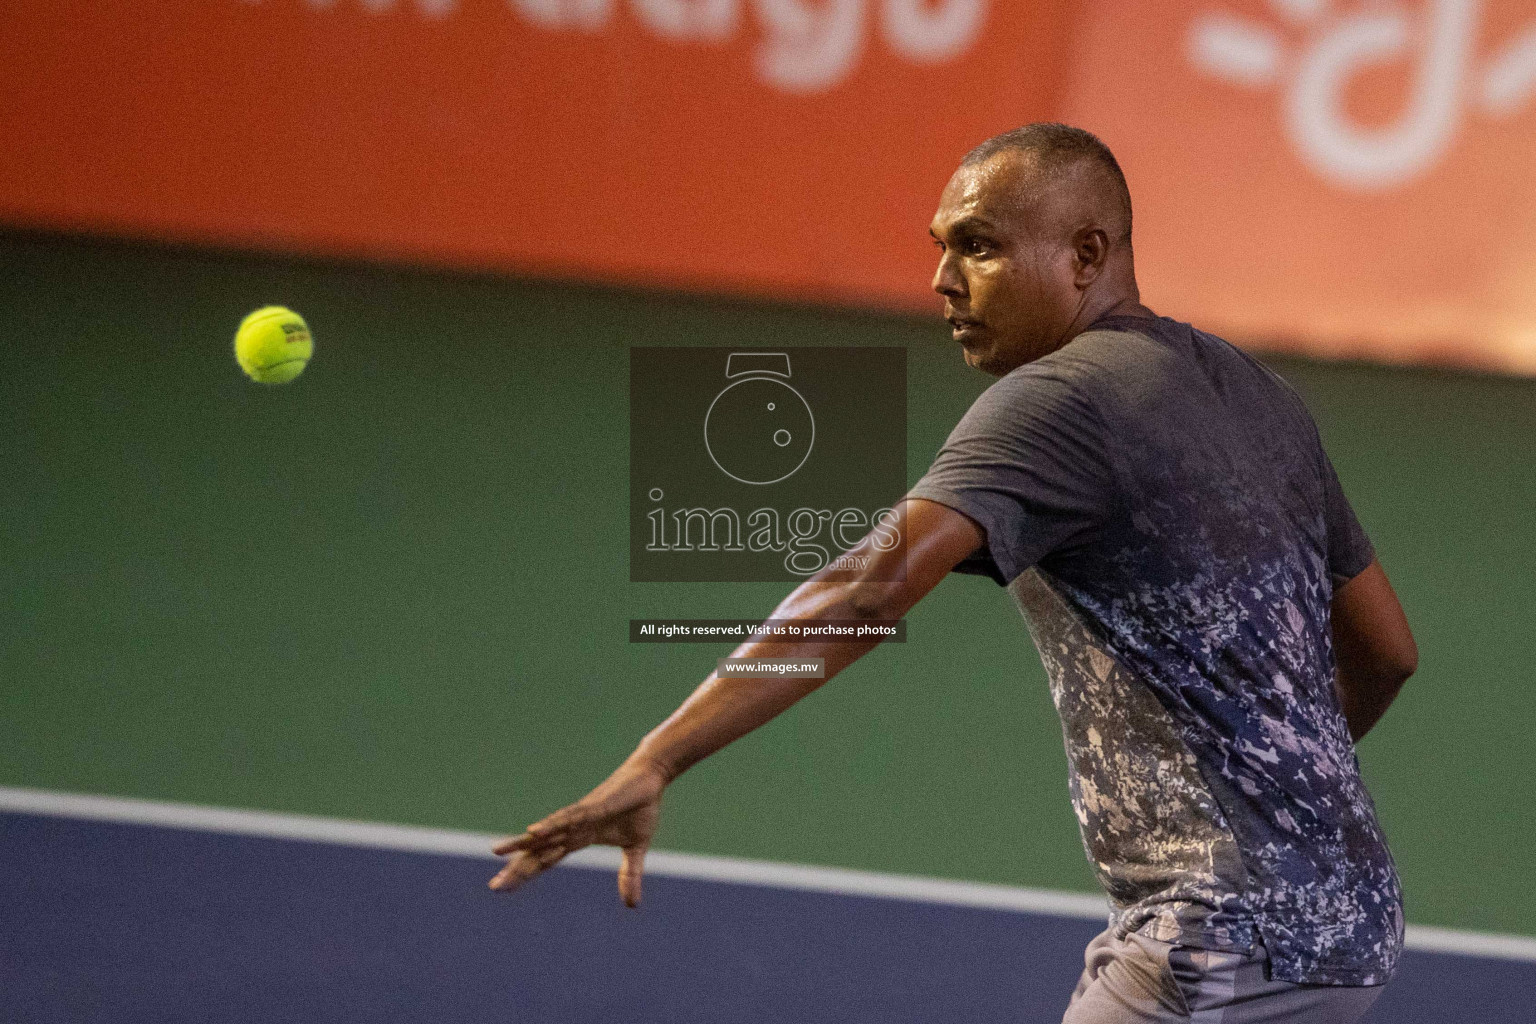 Maldives Tennis Open 2019, 14th Sep 2019, Male, Photos: Suadh Abdul Sattar/ Images.mv